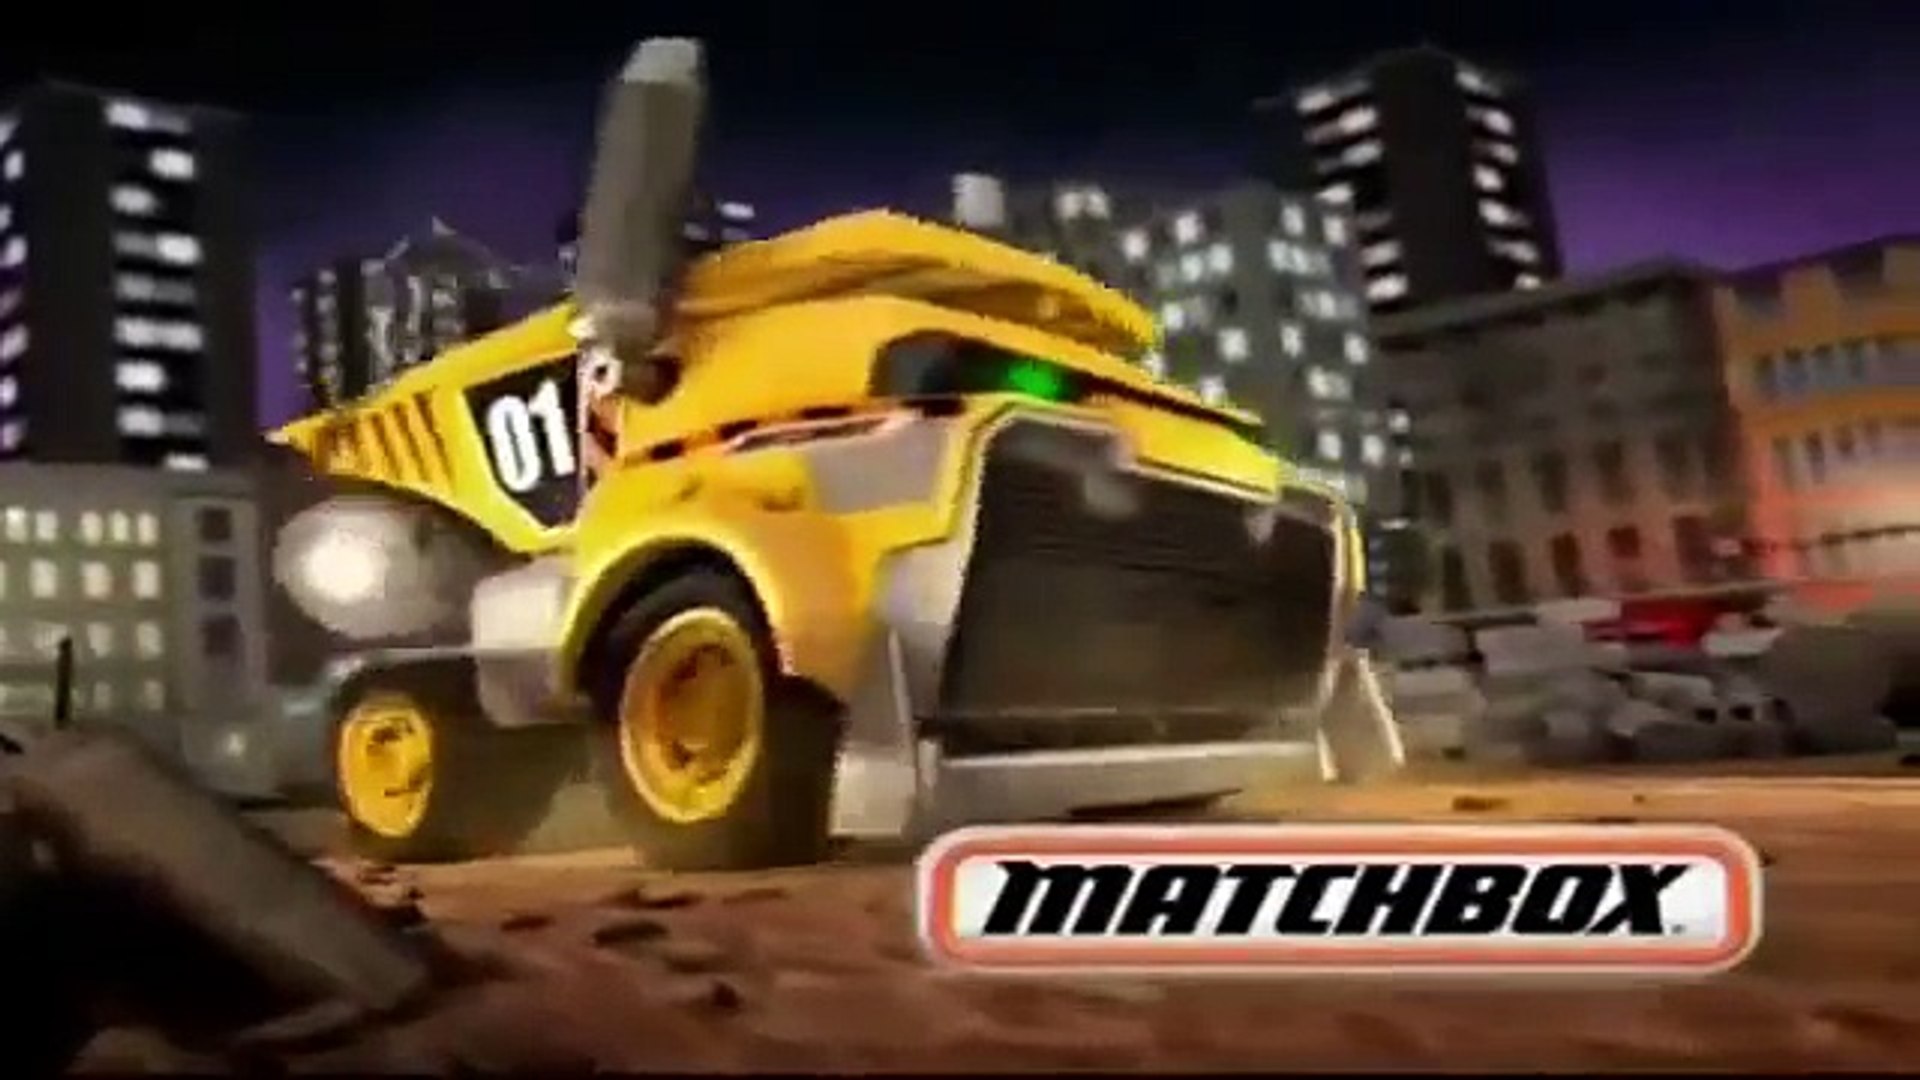 matchbox wrecking ball dump truck